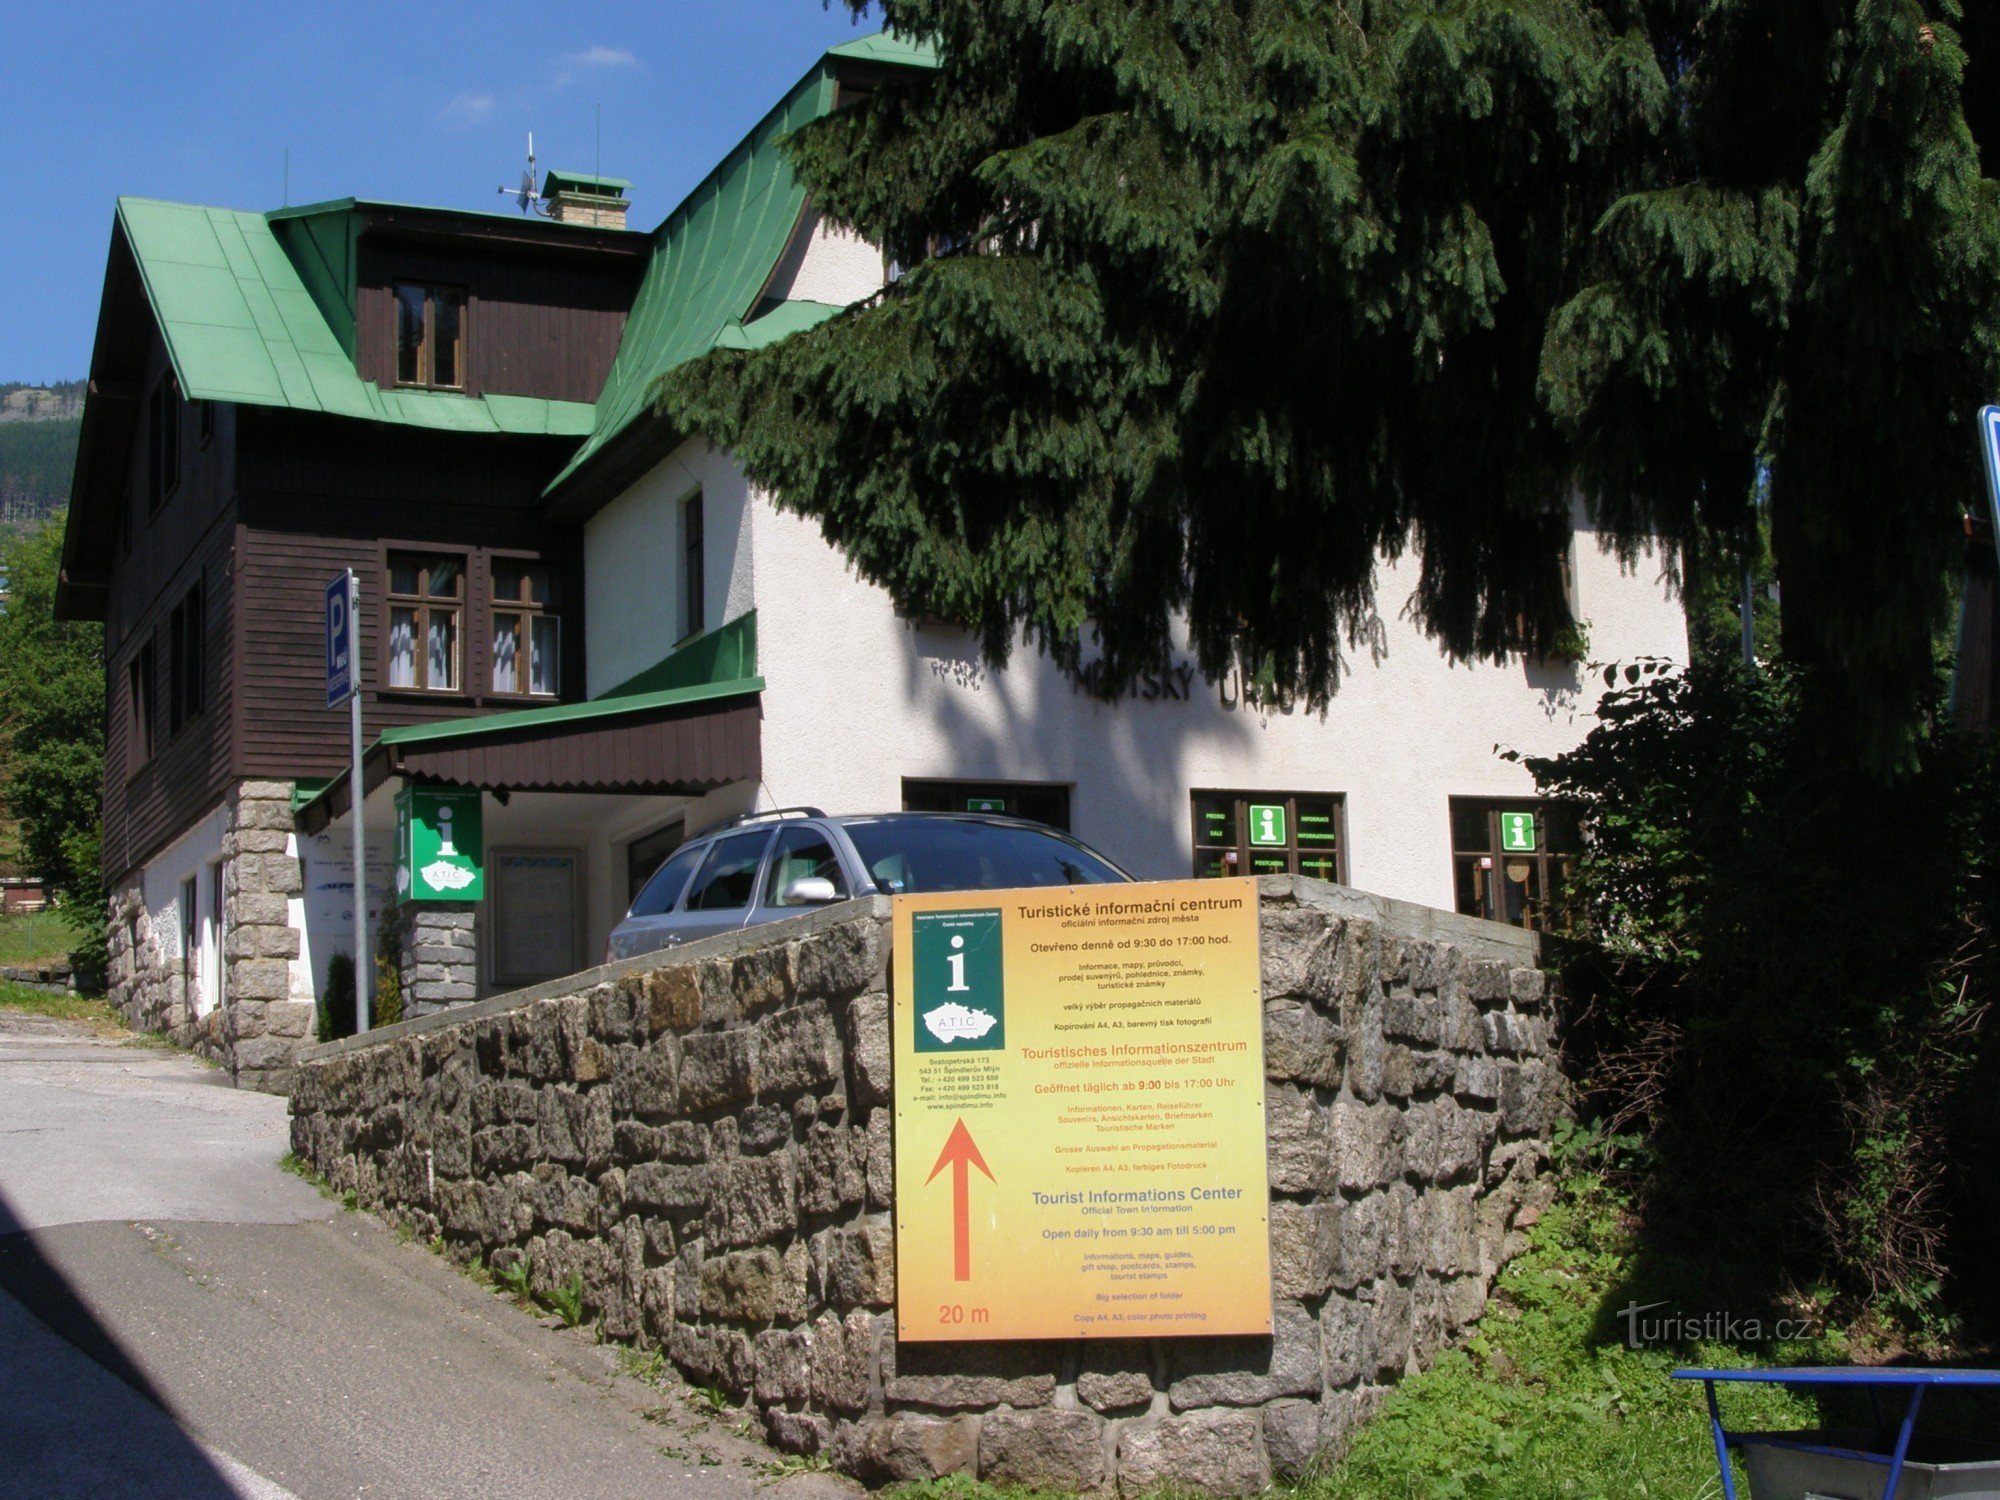 Шпиндлерув Млын - туристический информационный центр - 2015 год